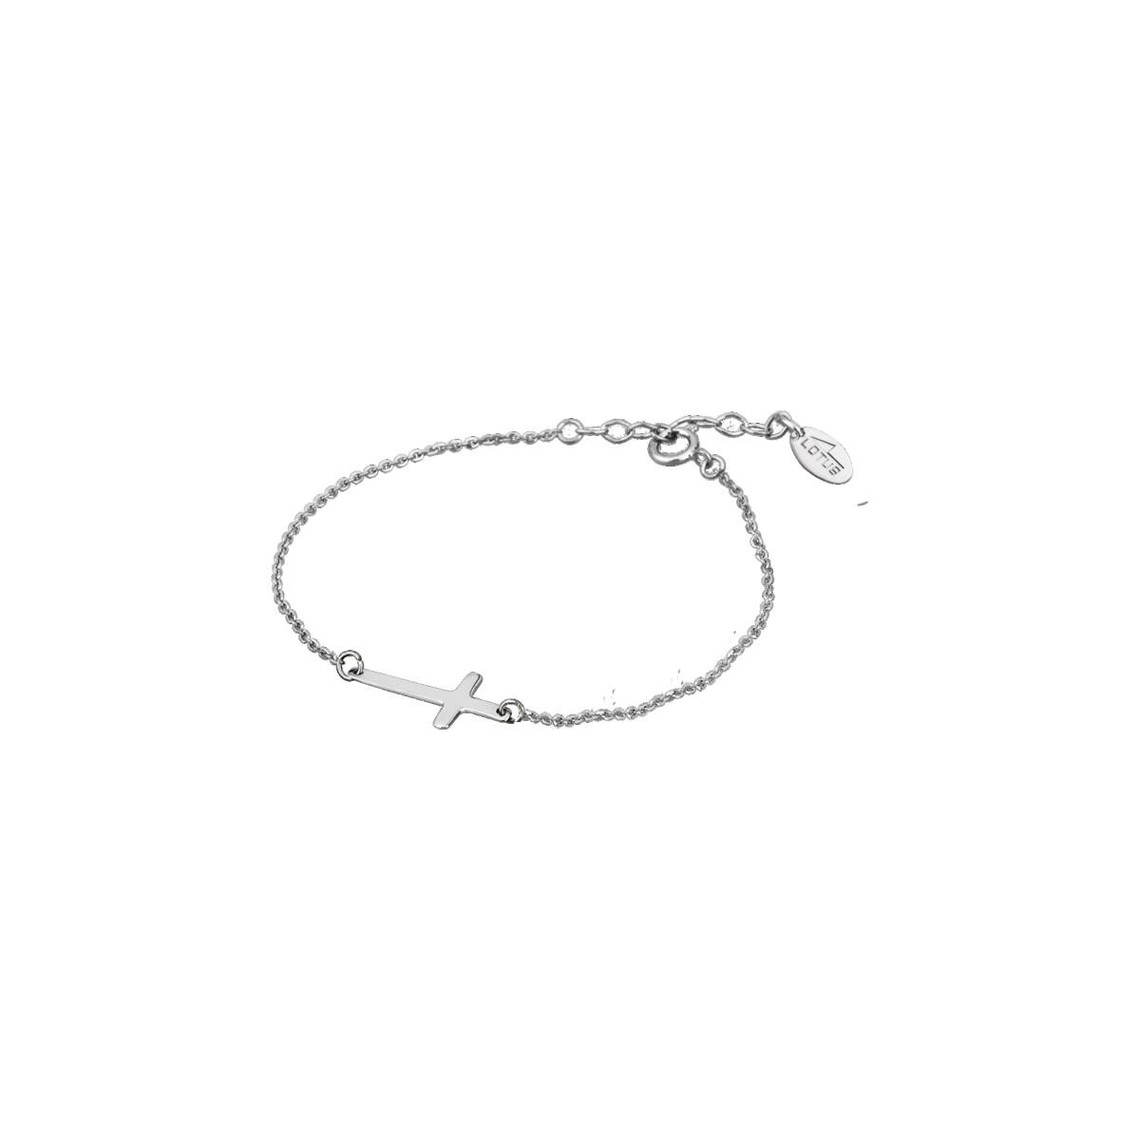 bracelet lotus silver lp1223-2/2 - croix argente trendy argent femme